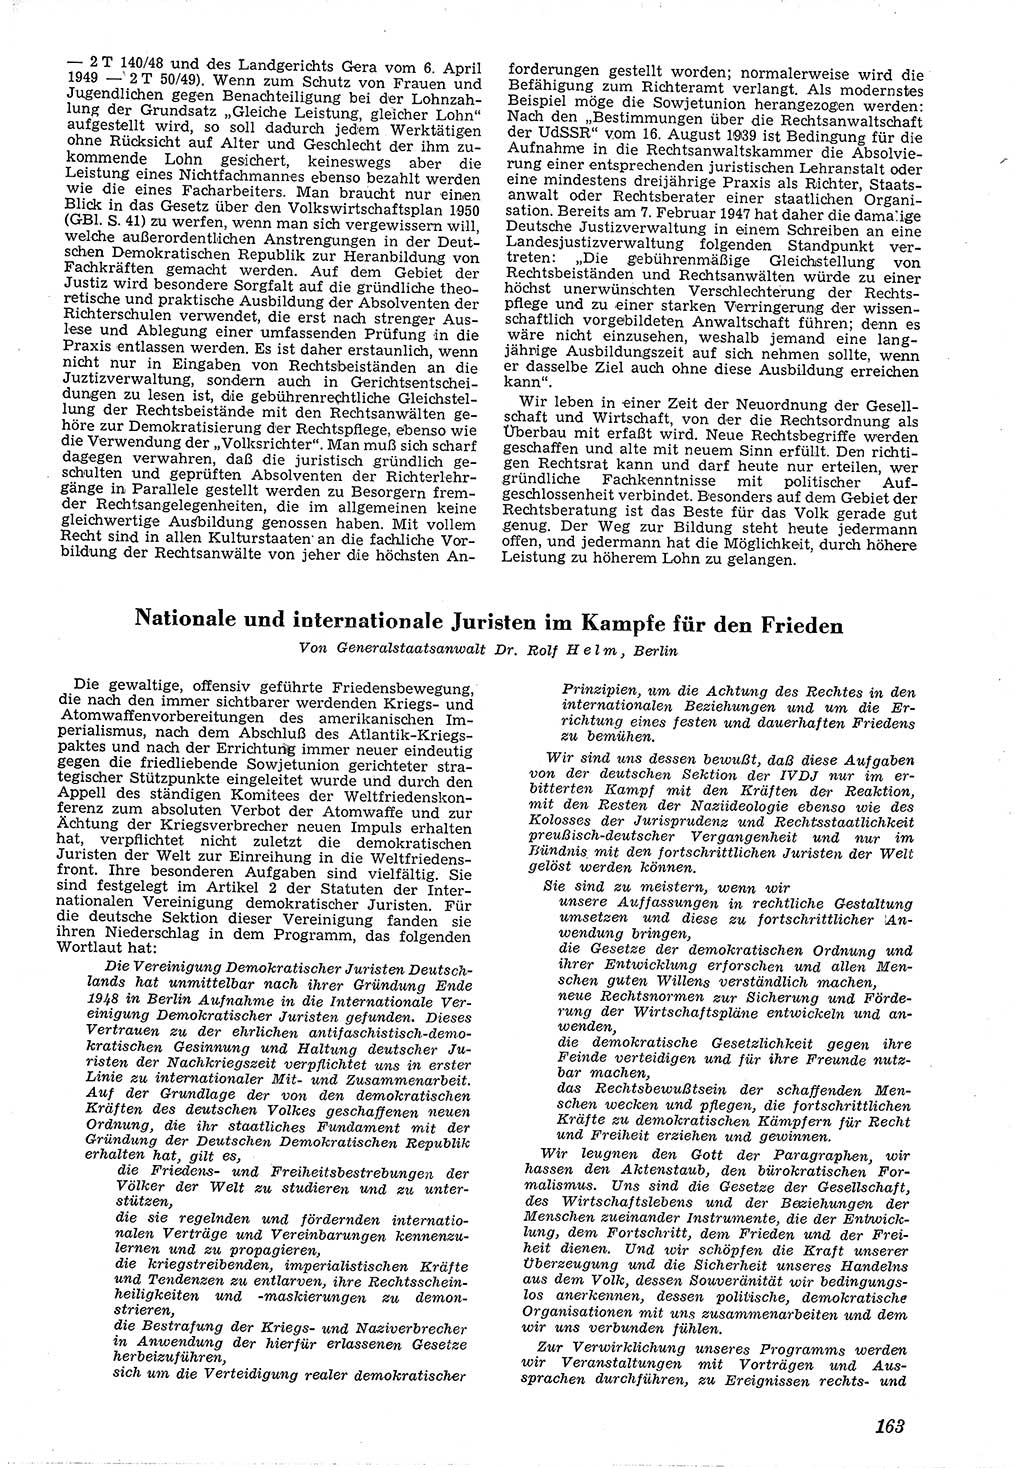 Neue Justiz (NJ), Zeitschrift für Recht und Rechtswissenschaft [Deutsche Demokratische Republik (DDR)], 4. Jahrgang 1950, Seite 163 (NJ DDR 1950, S. 163)